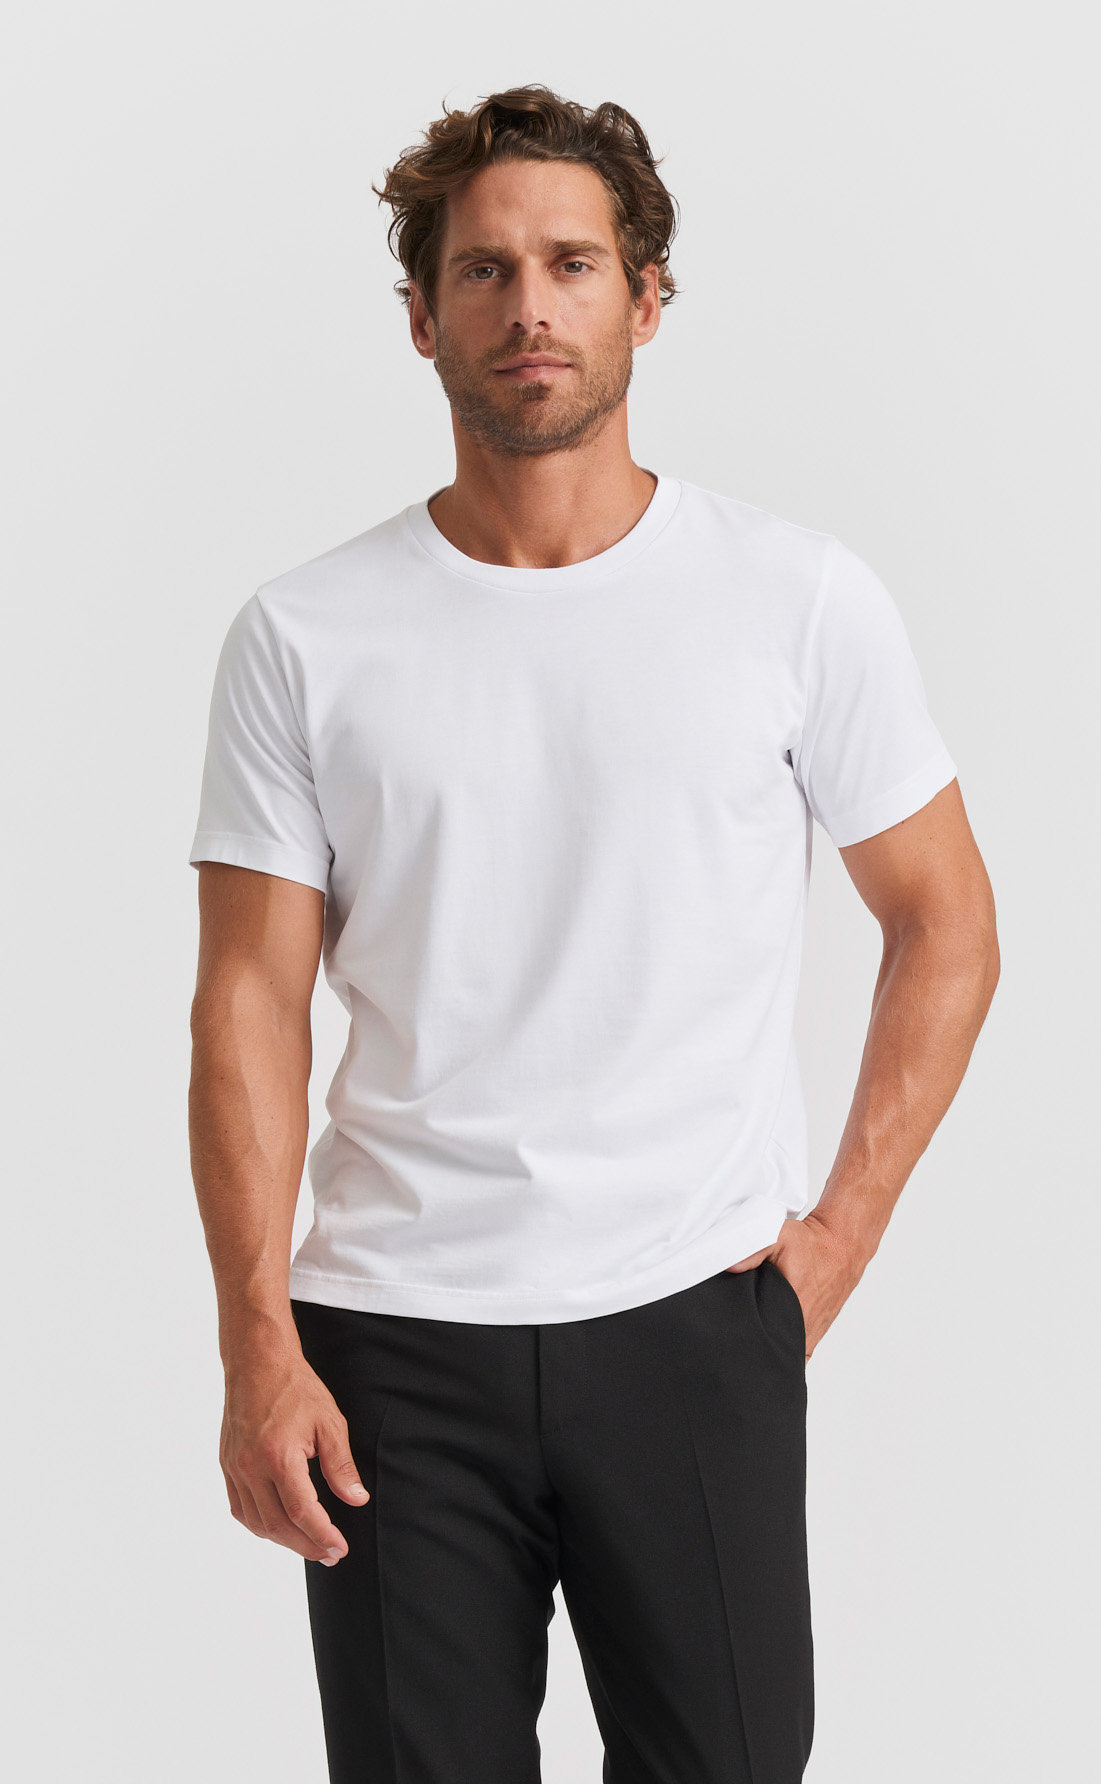 Layered T-Shirt Style